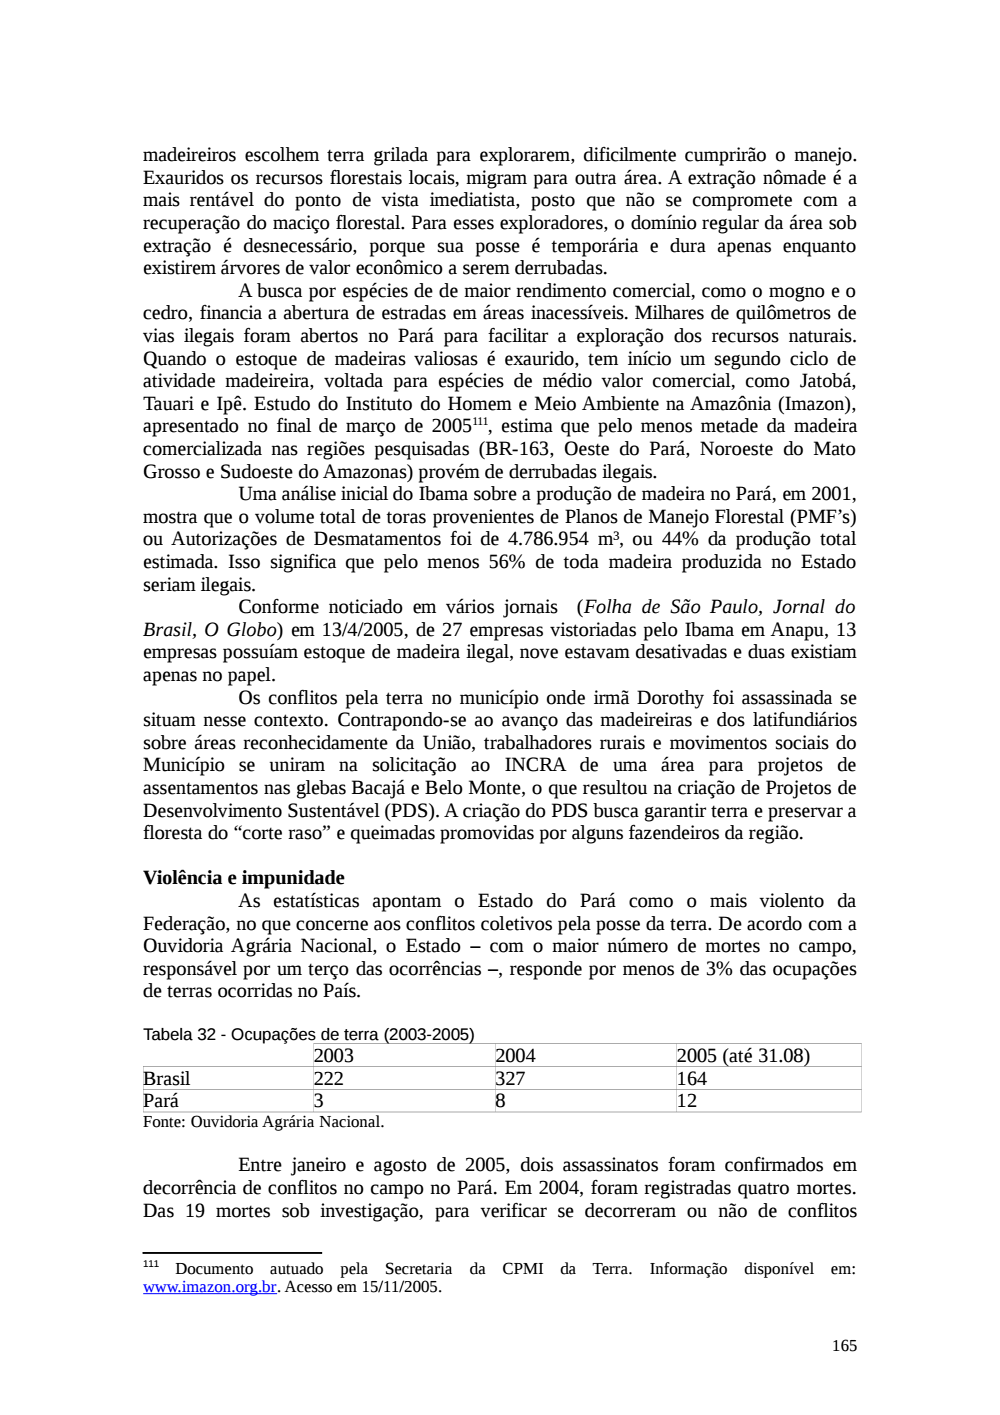 Page 165 from Relatório final da comissão